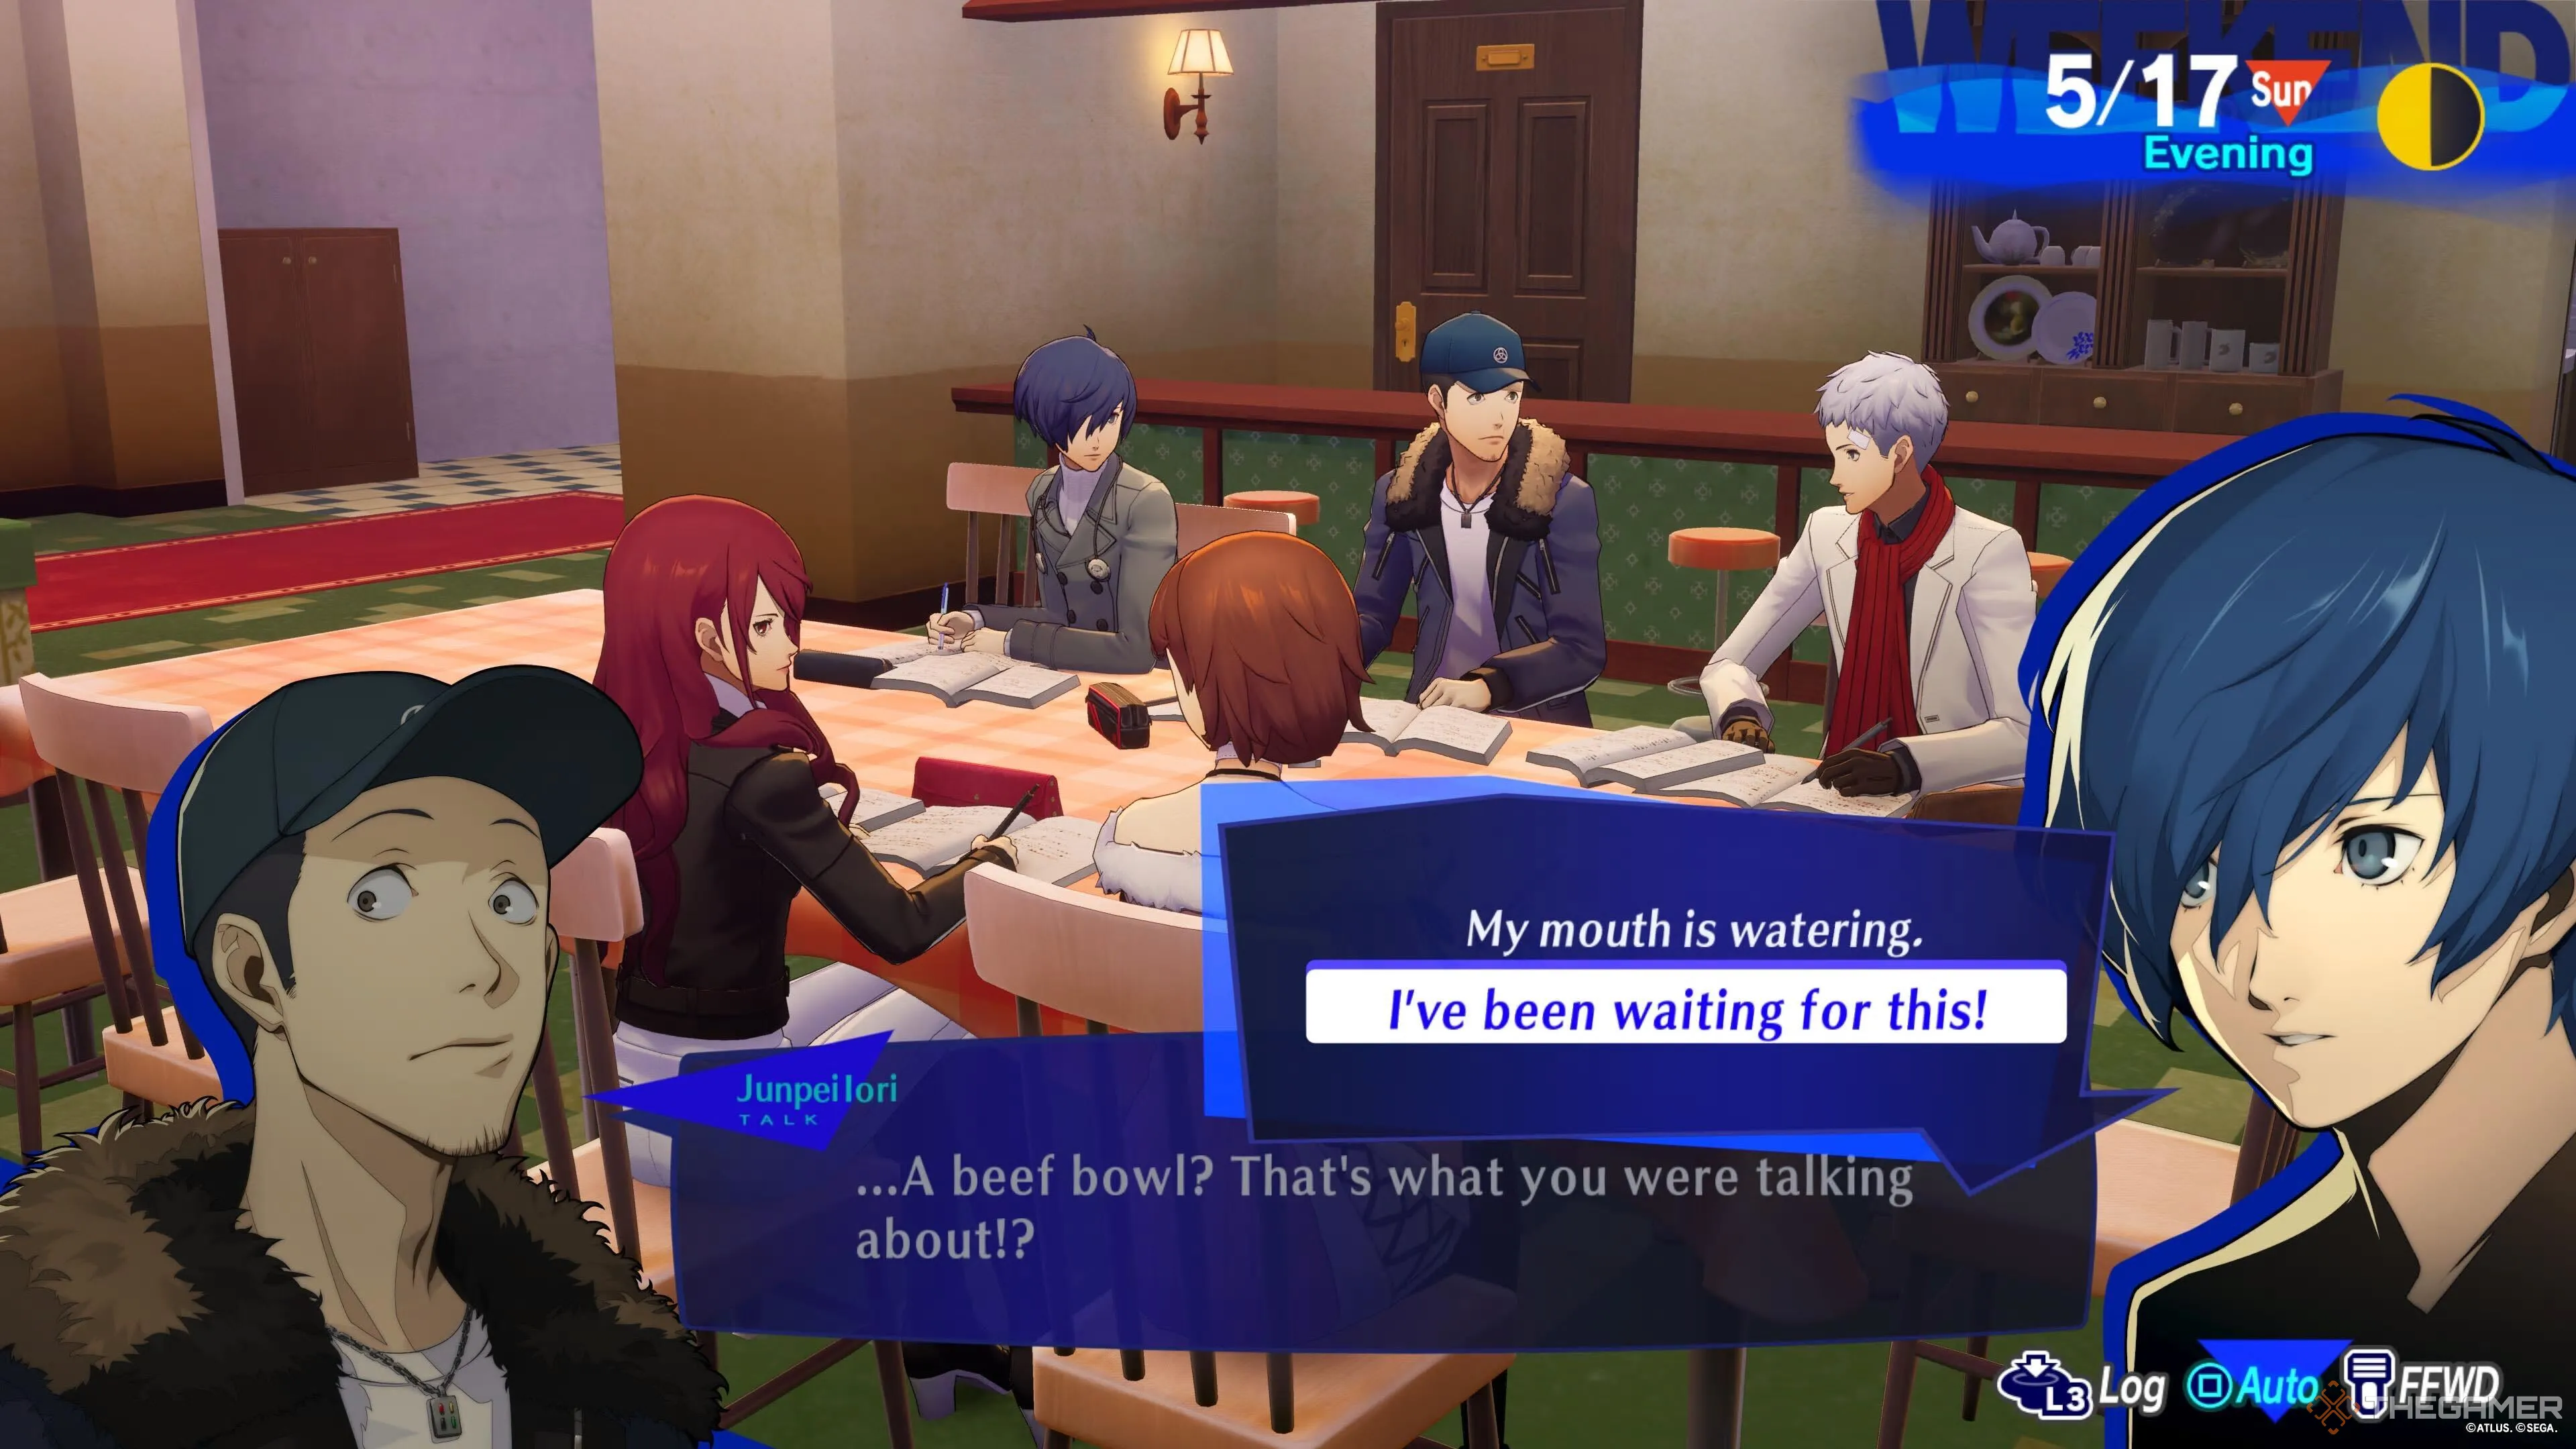 Le protagoniste discutant dans le groupe d'étude Persona 3 Reload